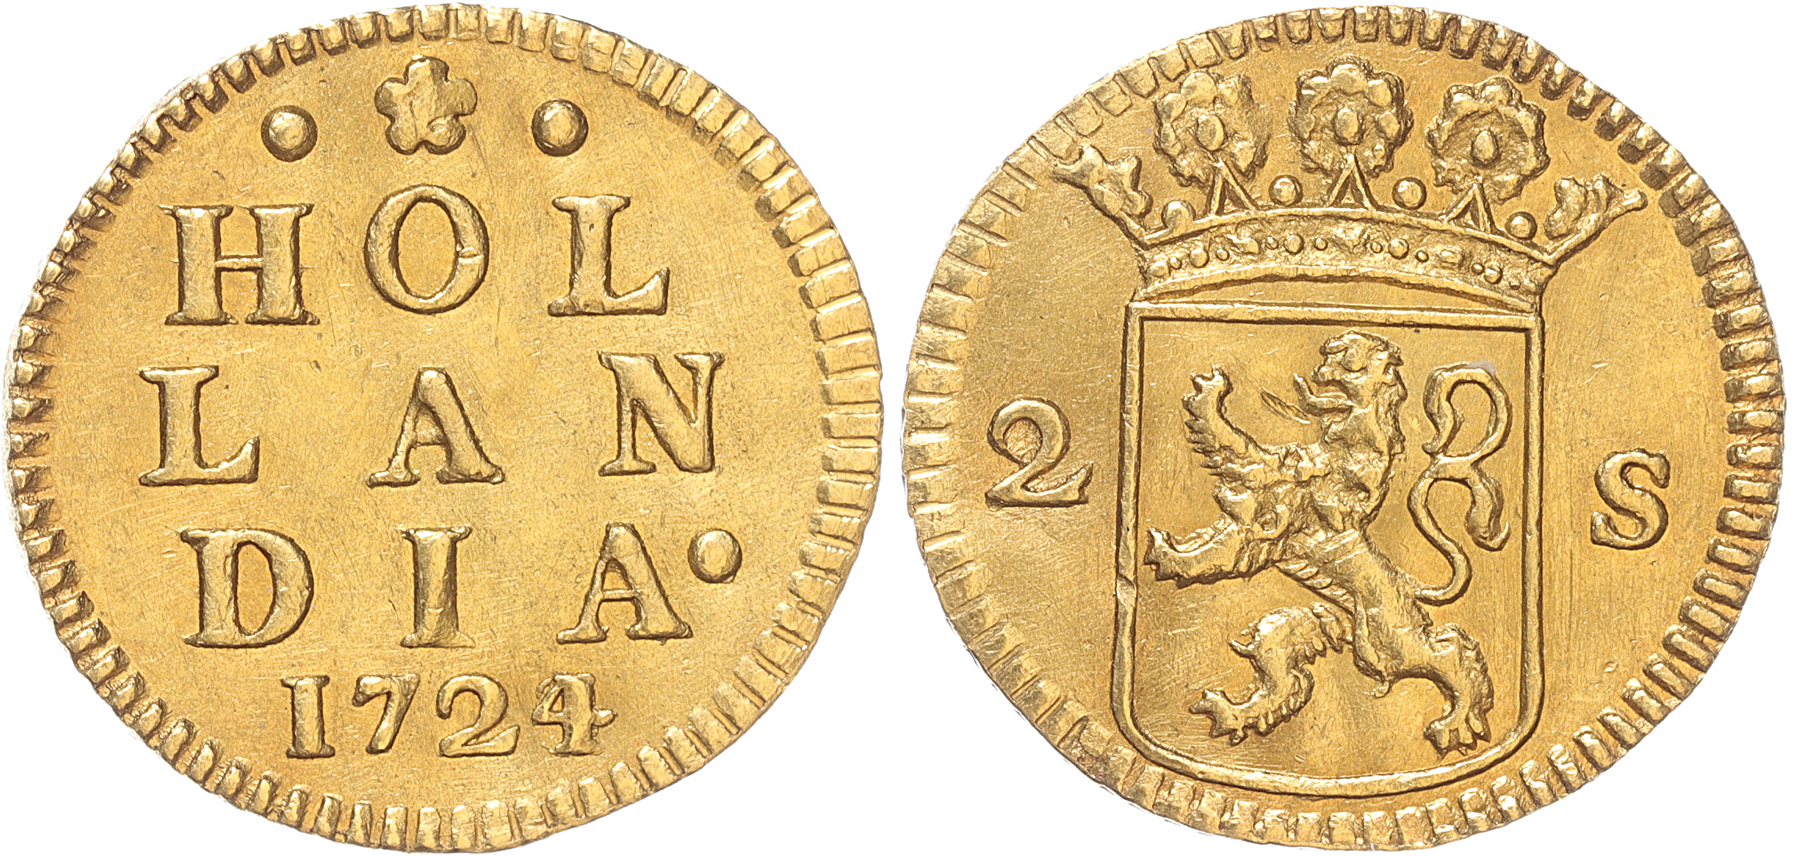 Holland Dubbele wapenstuiver goud 1724/23